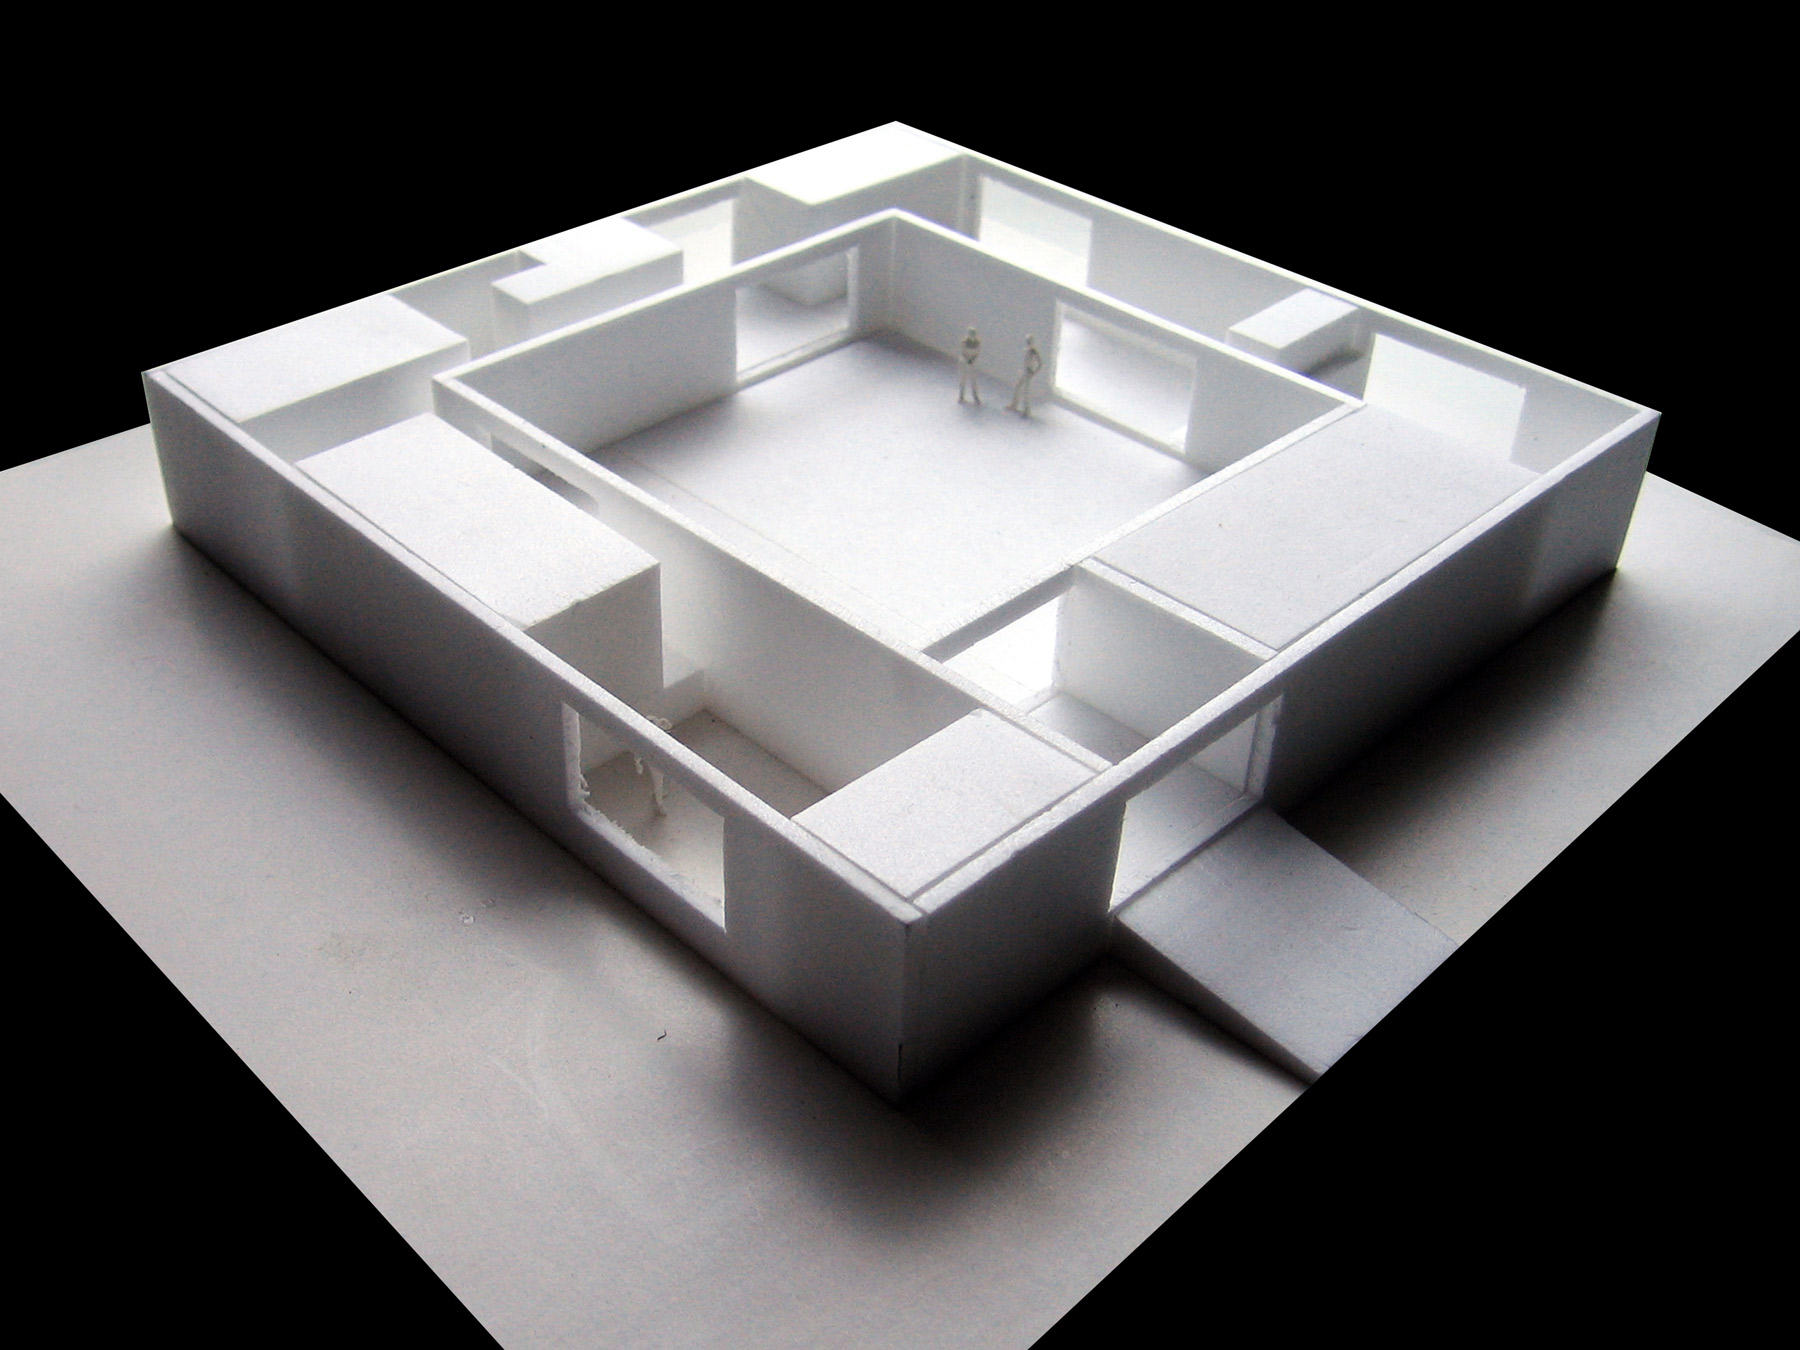 4 Atrium house study model